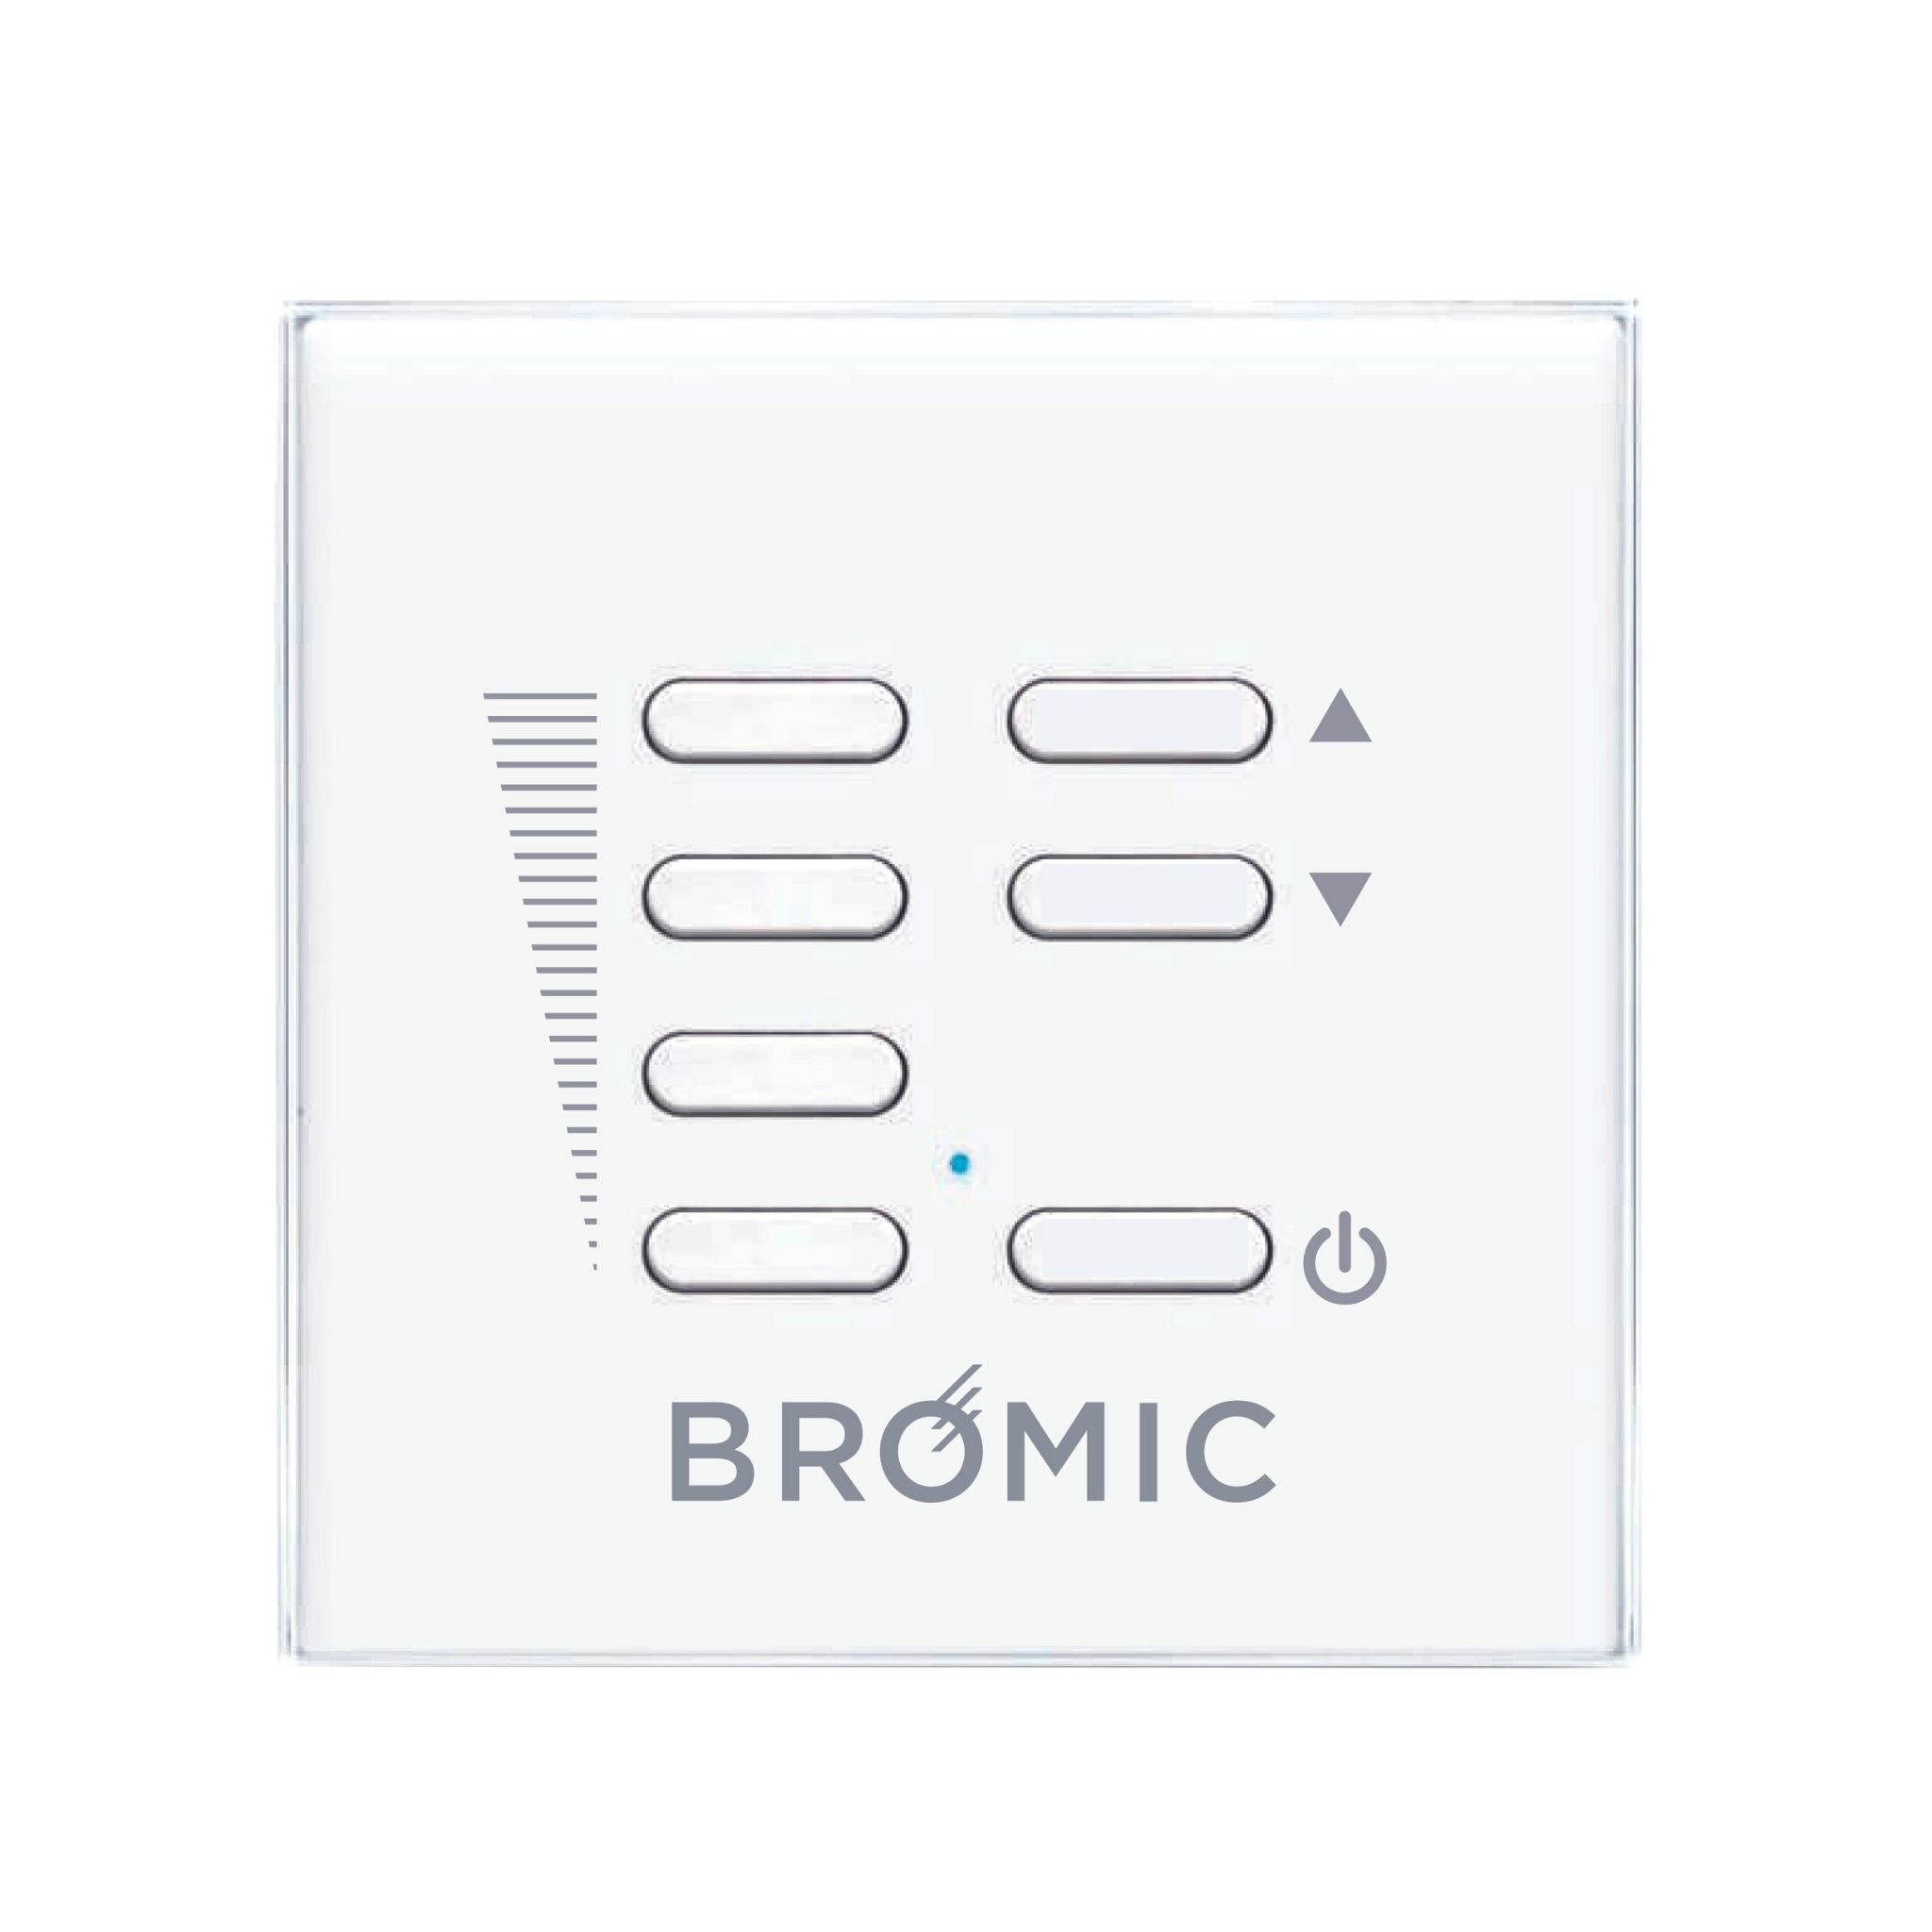 Bromic Wireless Dimmer Controller